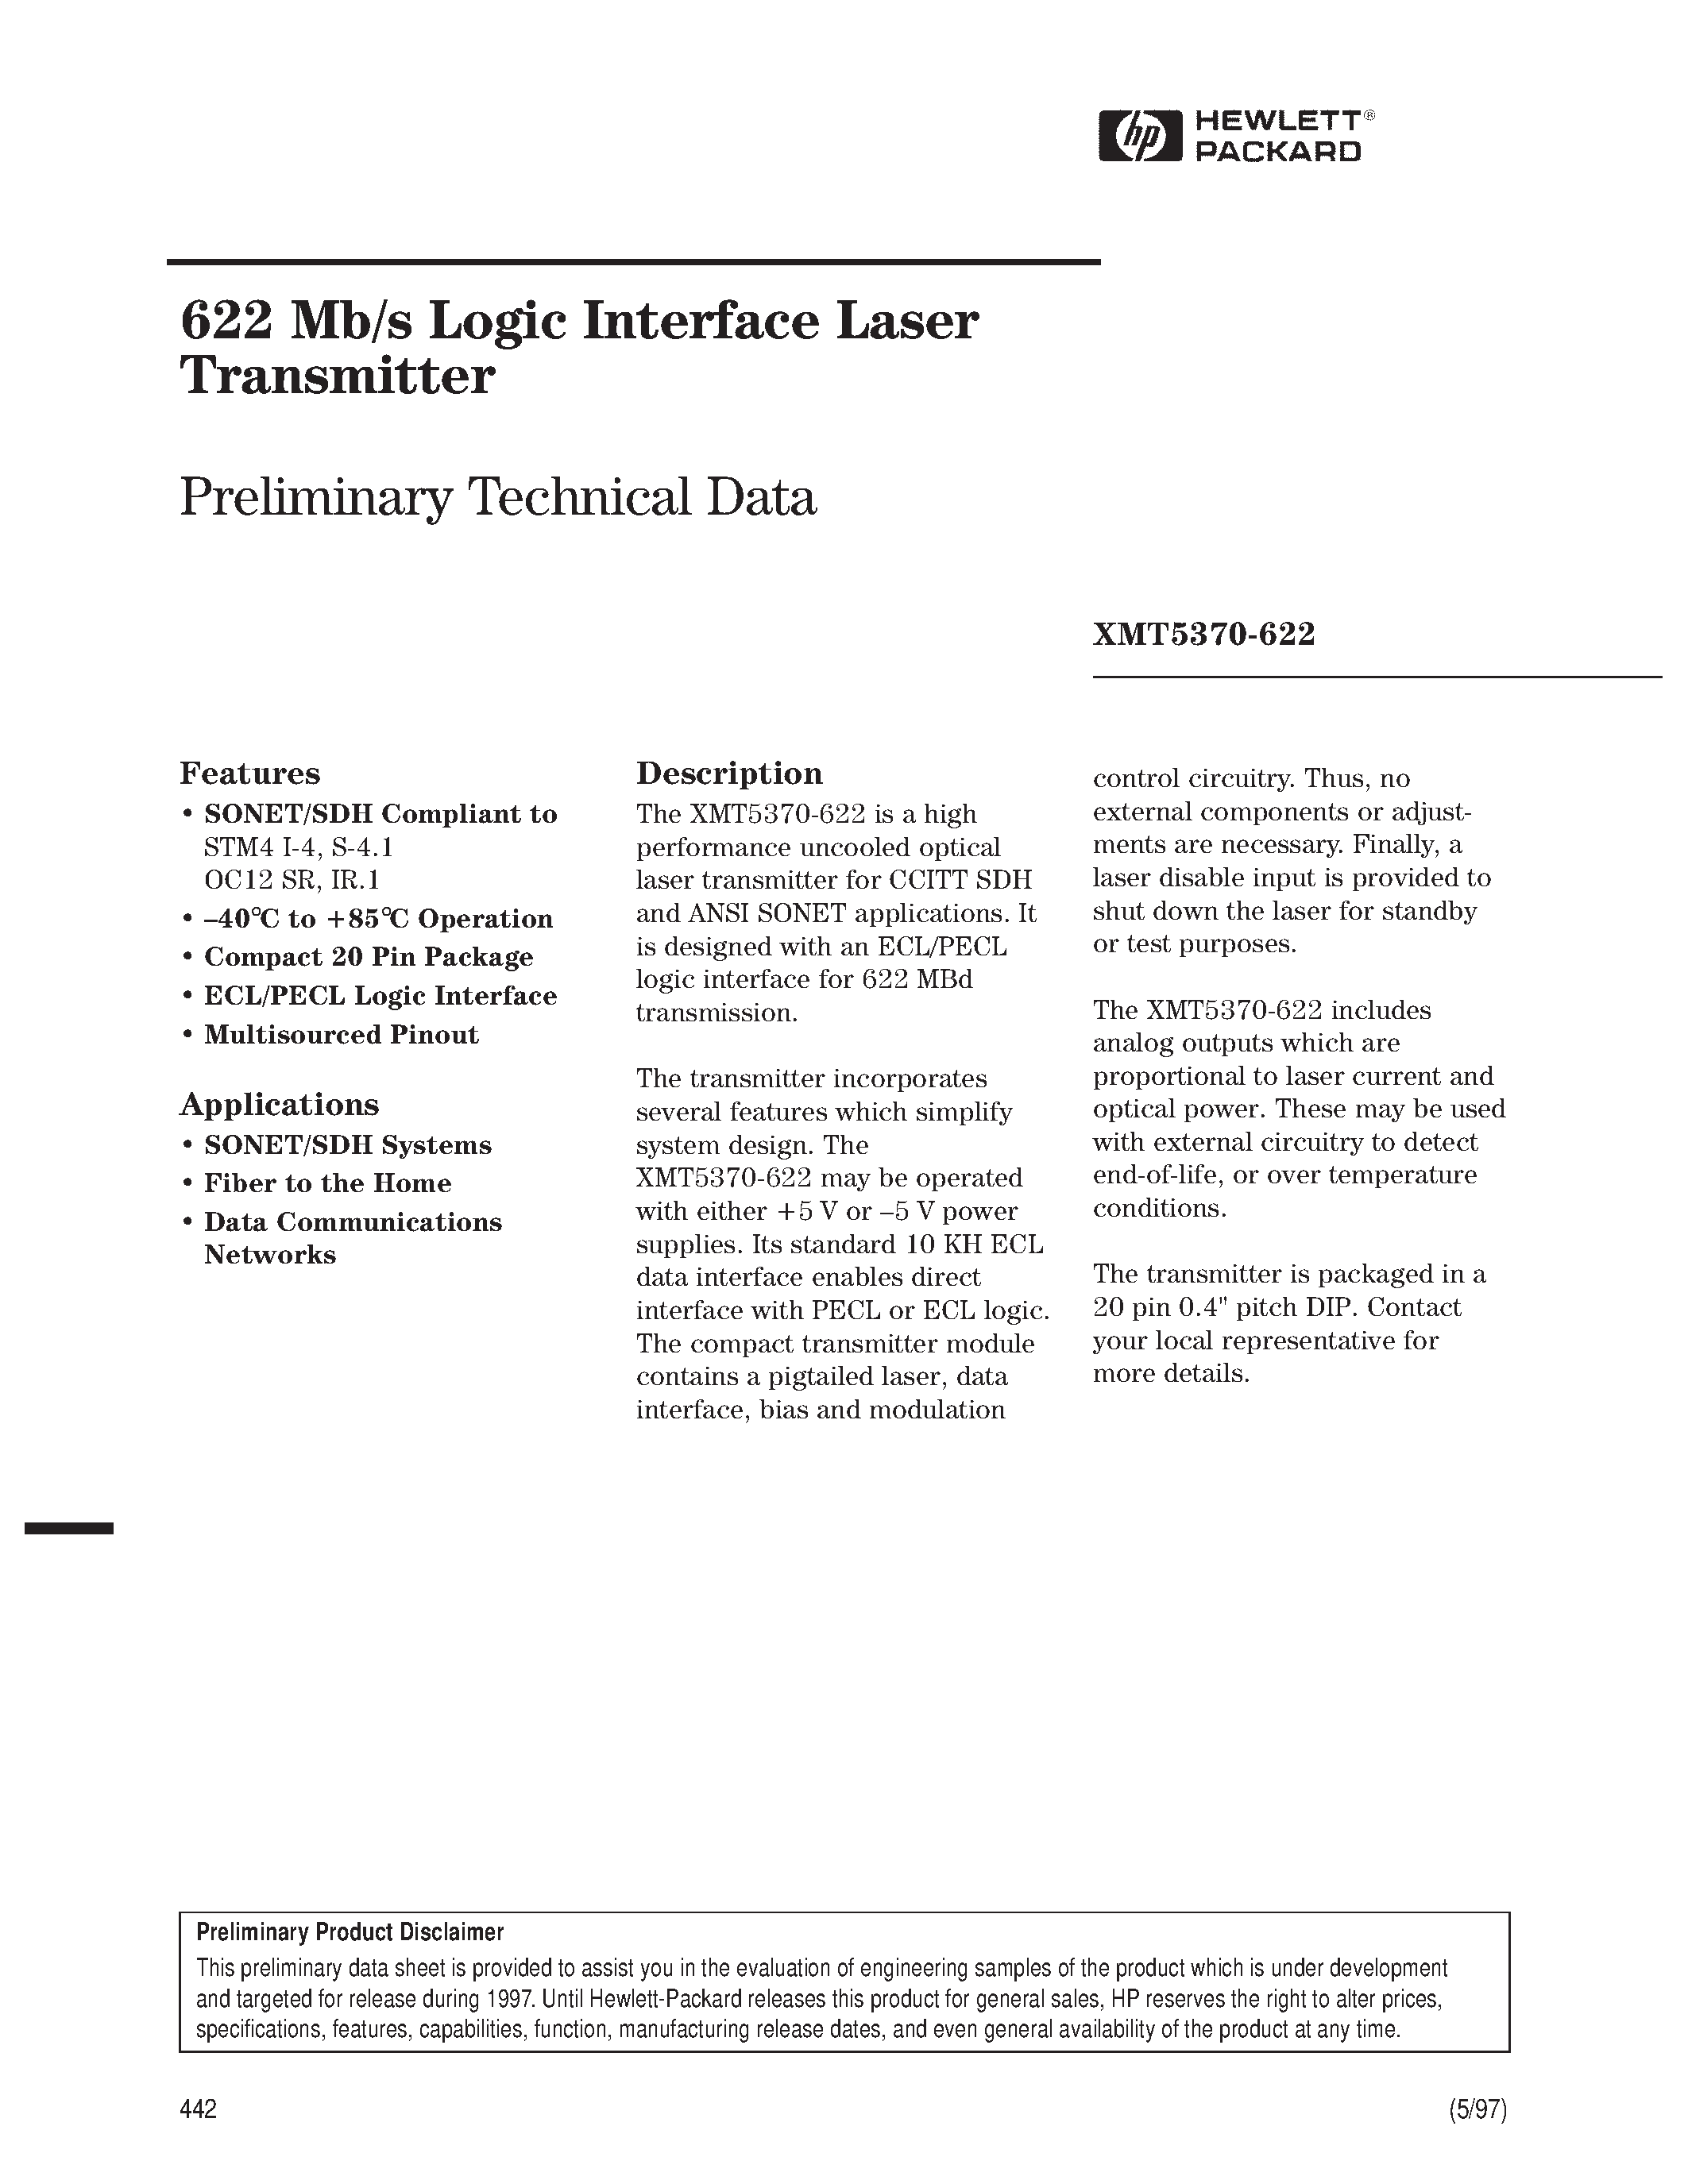 Datasheet XMT5370B-622-ST - 622 Mb/s Logic Interface Laser Transmitter page 1